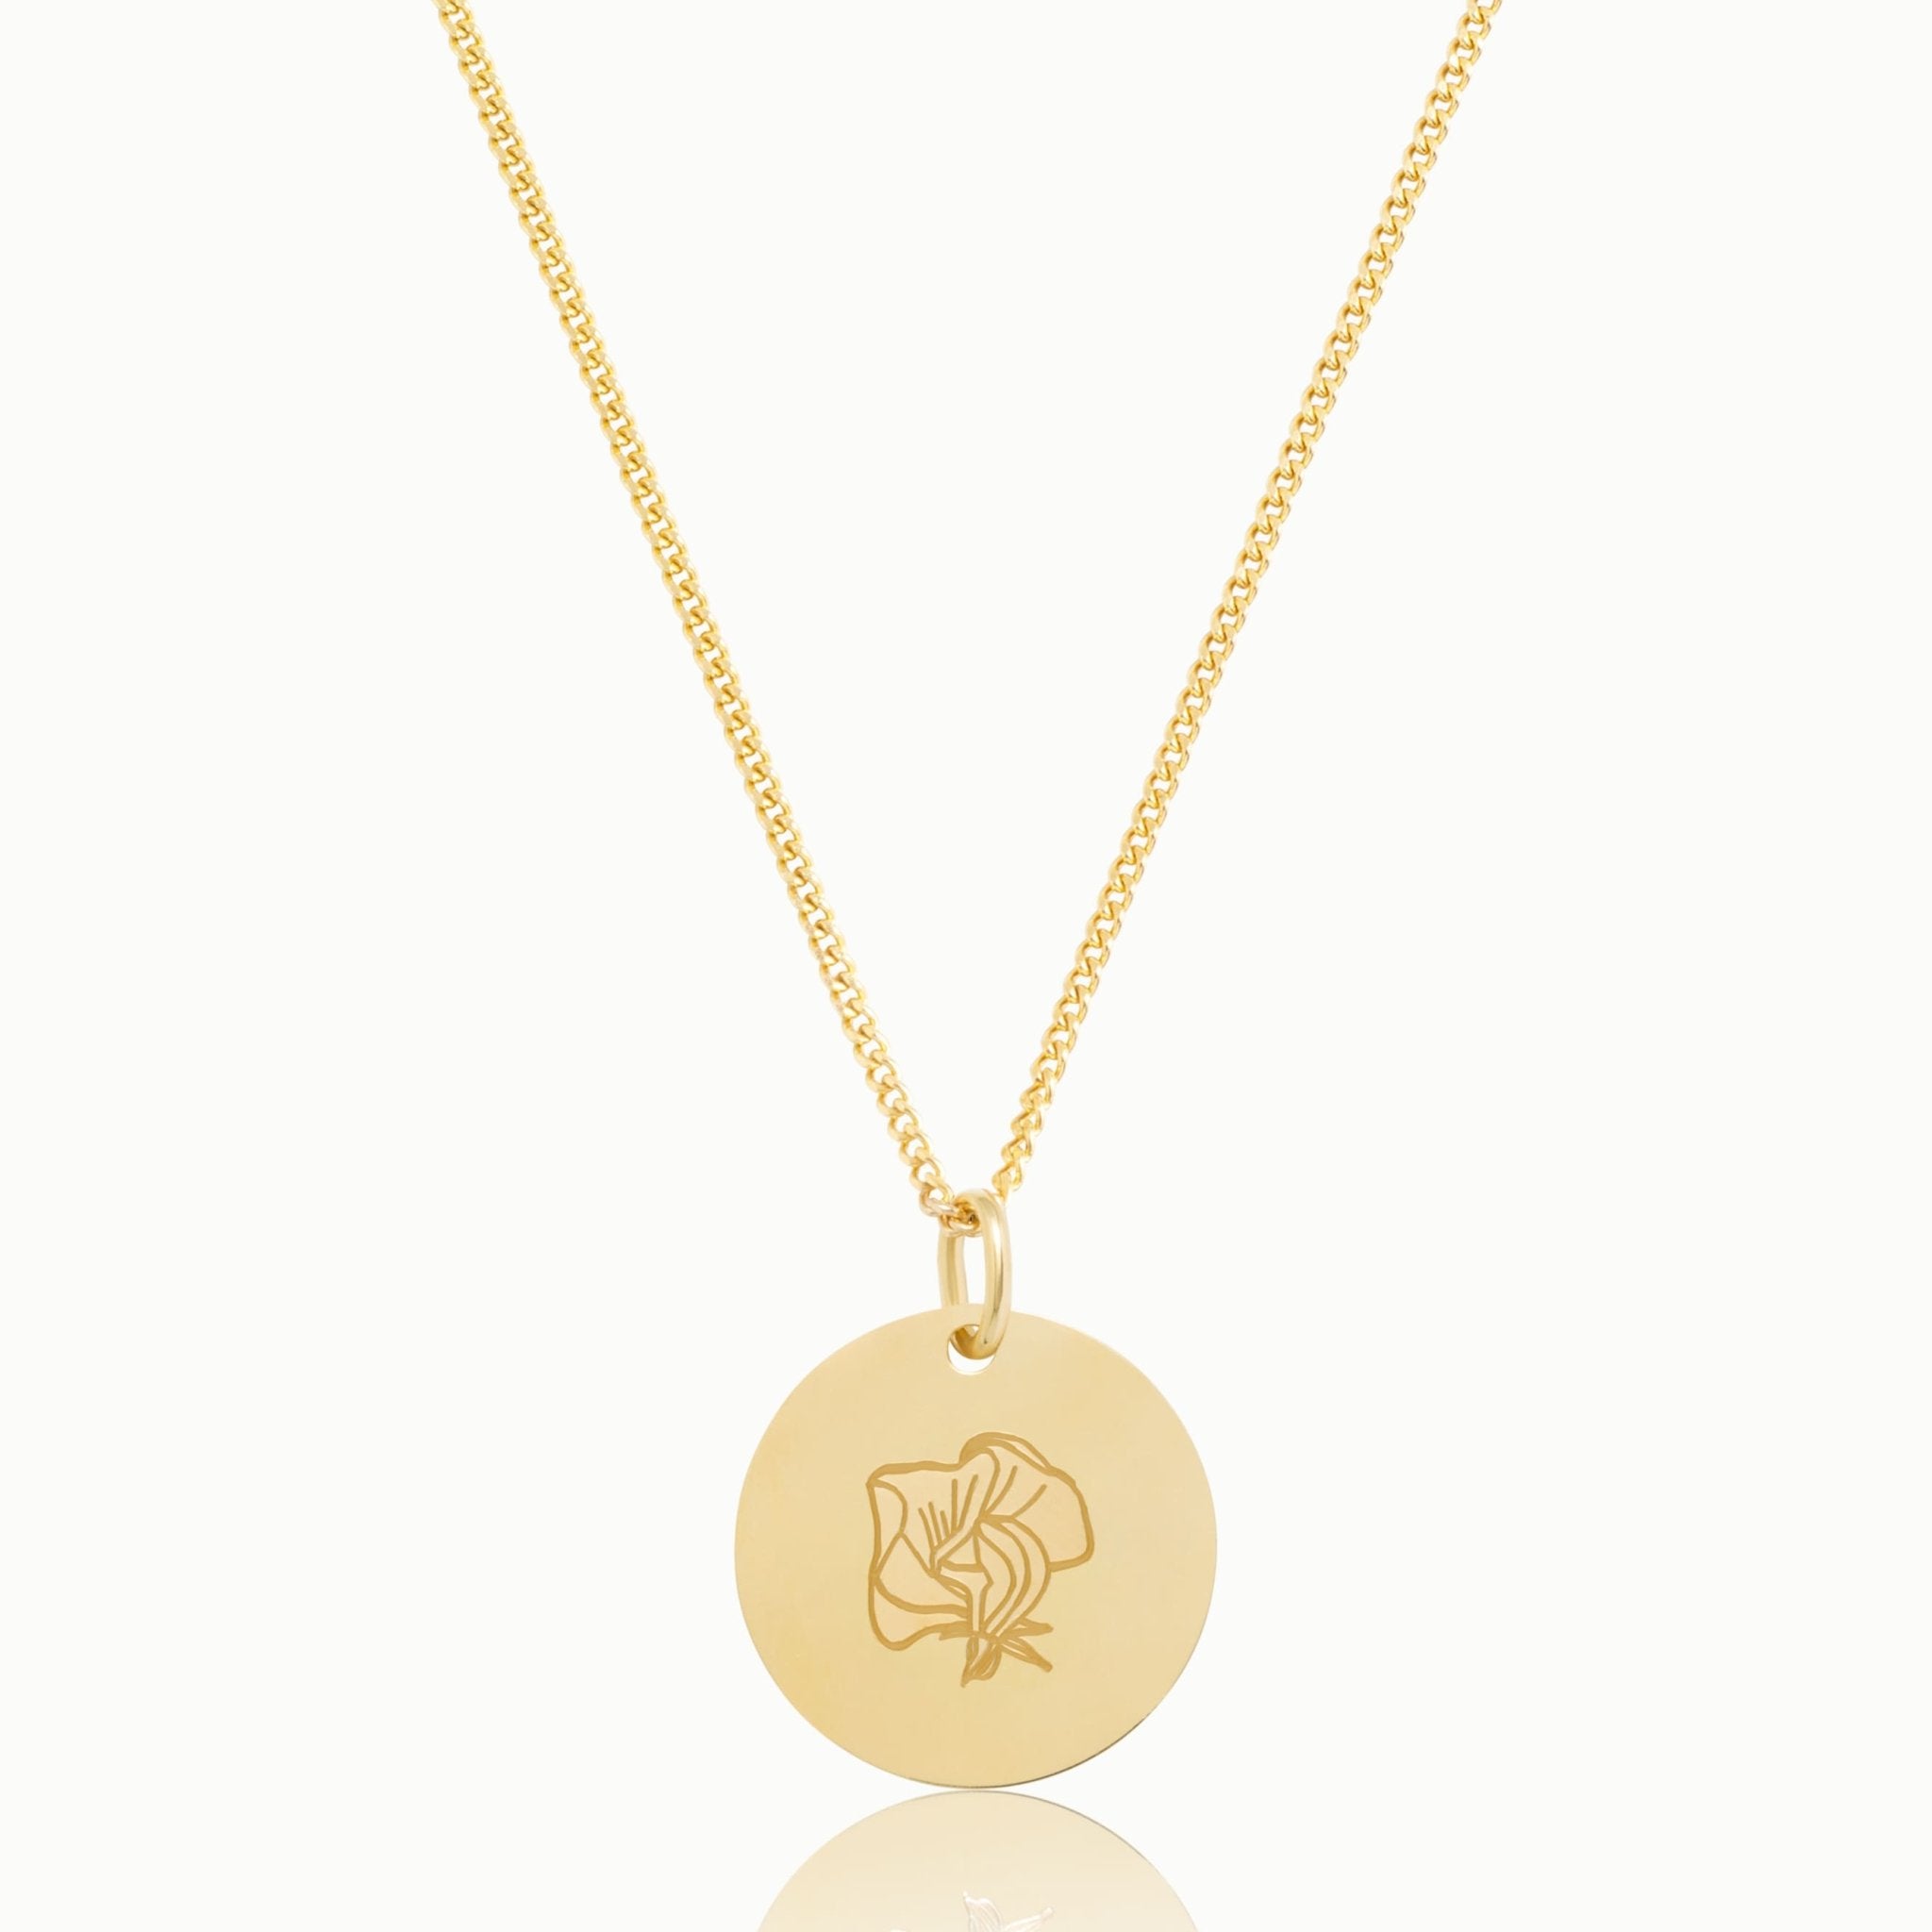 18kt vergoldete Classic Coin Halskette mit Geburtsblume. Die Kette hat einen runden Anhänger mit einer Geburtsblüte, einzigartiger Schmuck mit Bedeutung von „Emma & Marie“. 